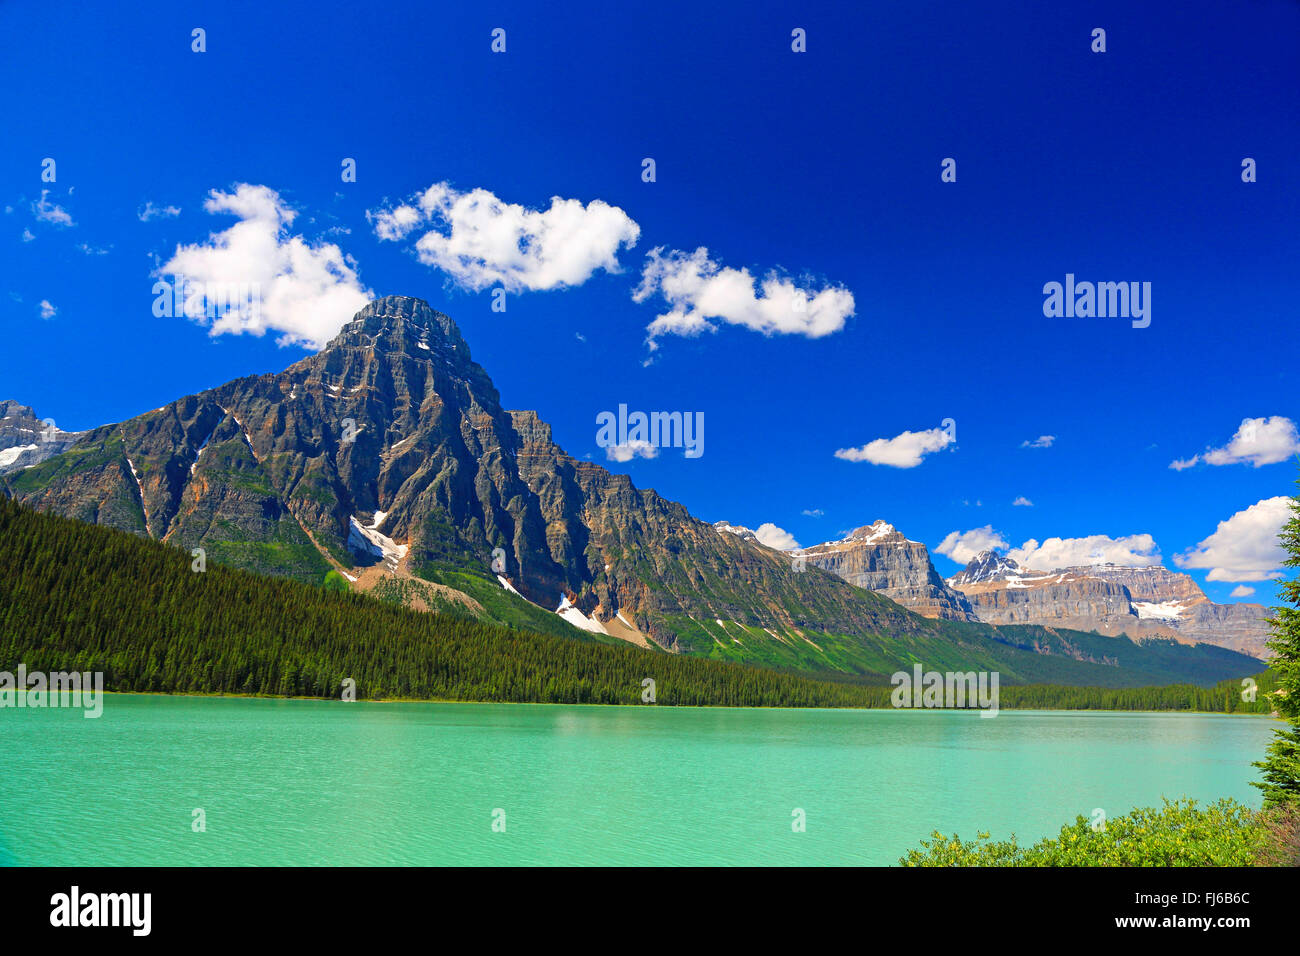 Le Lac de la sauvagine à l'autoroute 93, le Canada, l'Alberta, parc national de Banff Banque D'Images